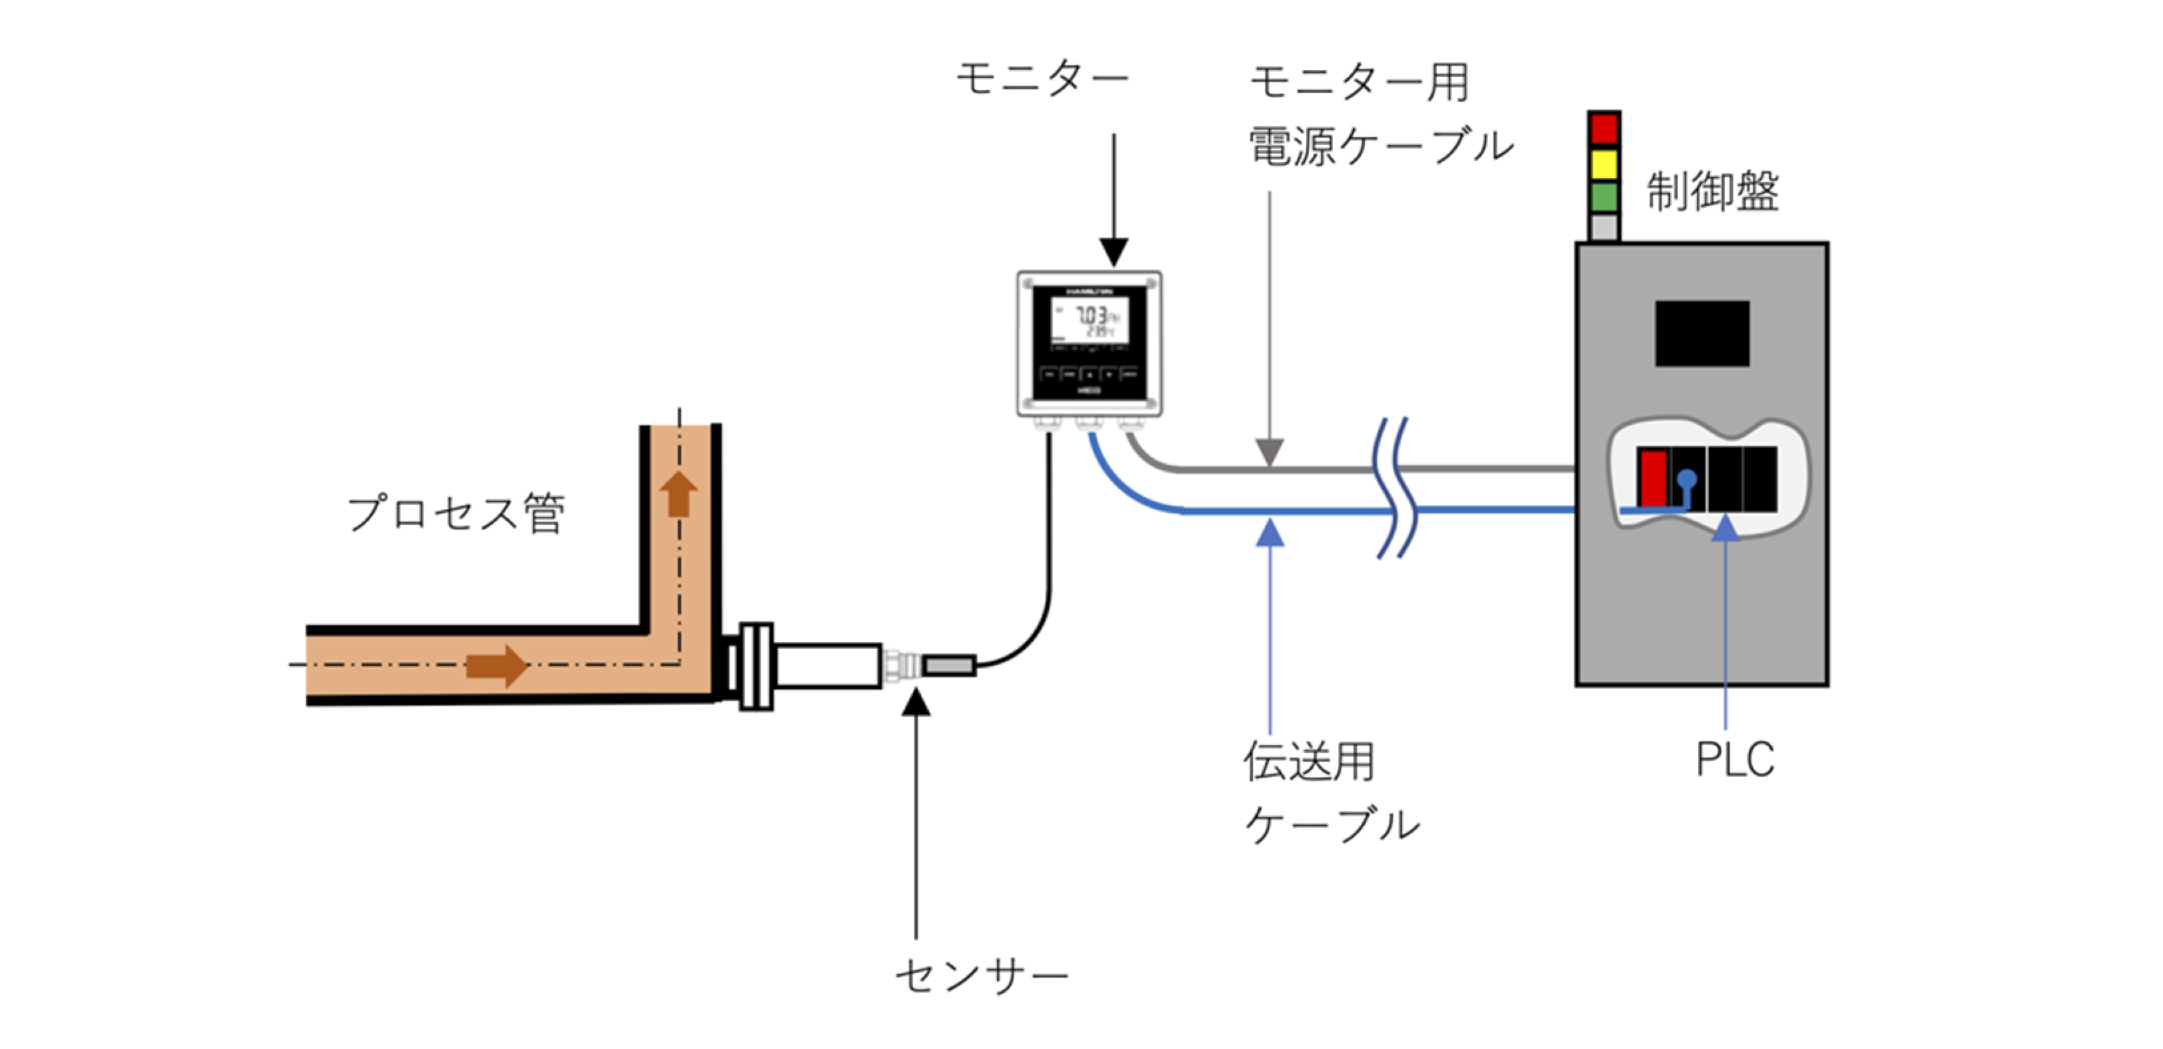 イメージ比較 1 従来の形 モニターとセンサー、制御との接続 | Hamilton Process Sensor HUB Comparison Image 1